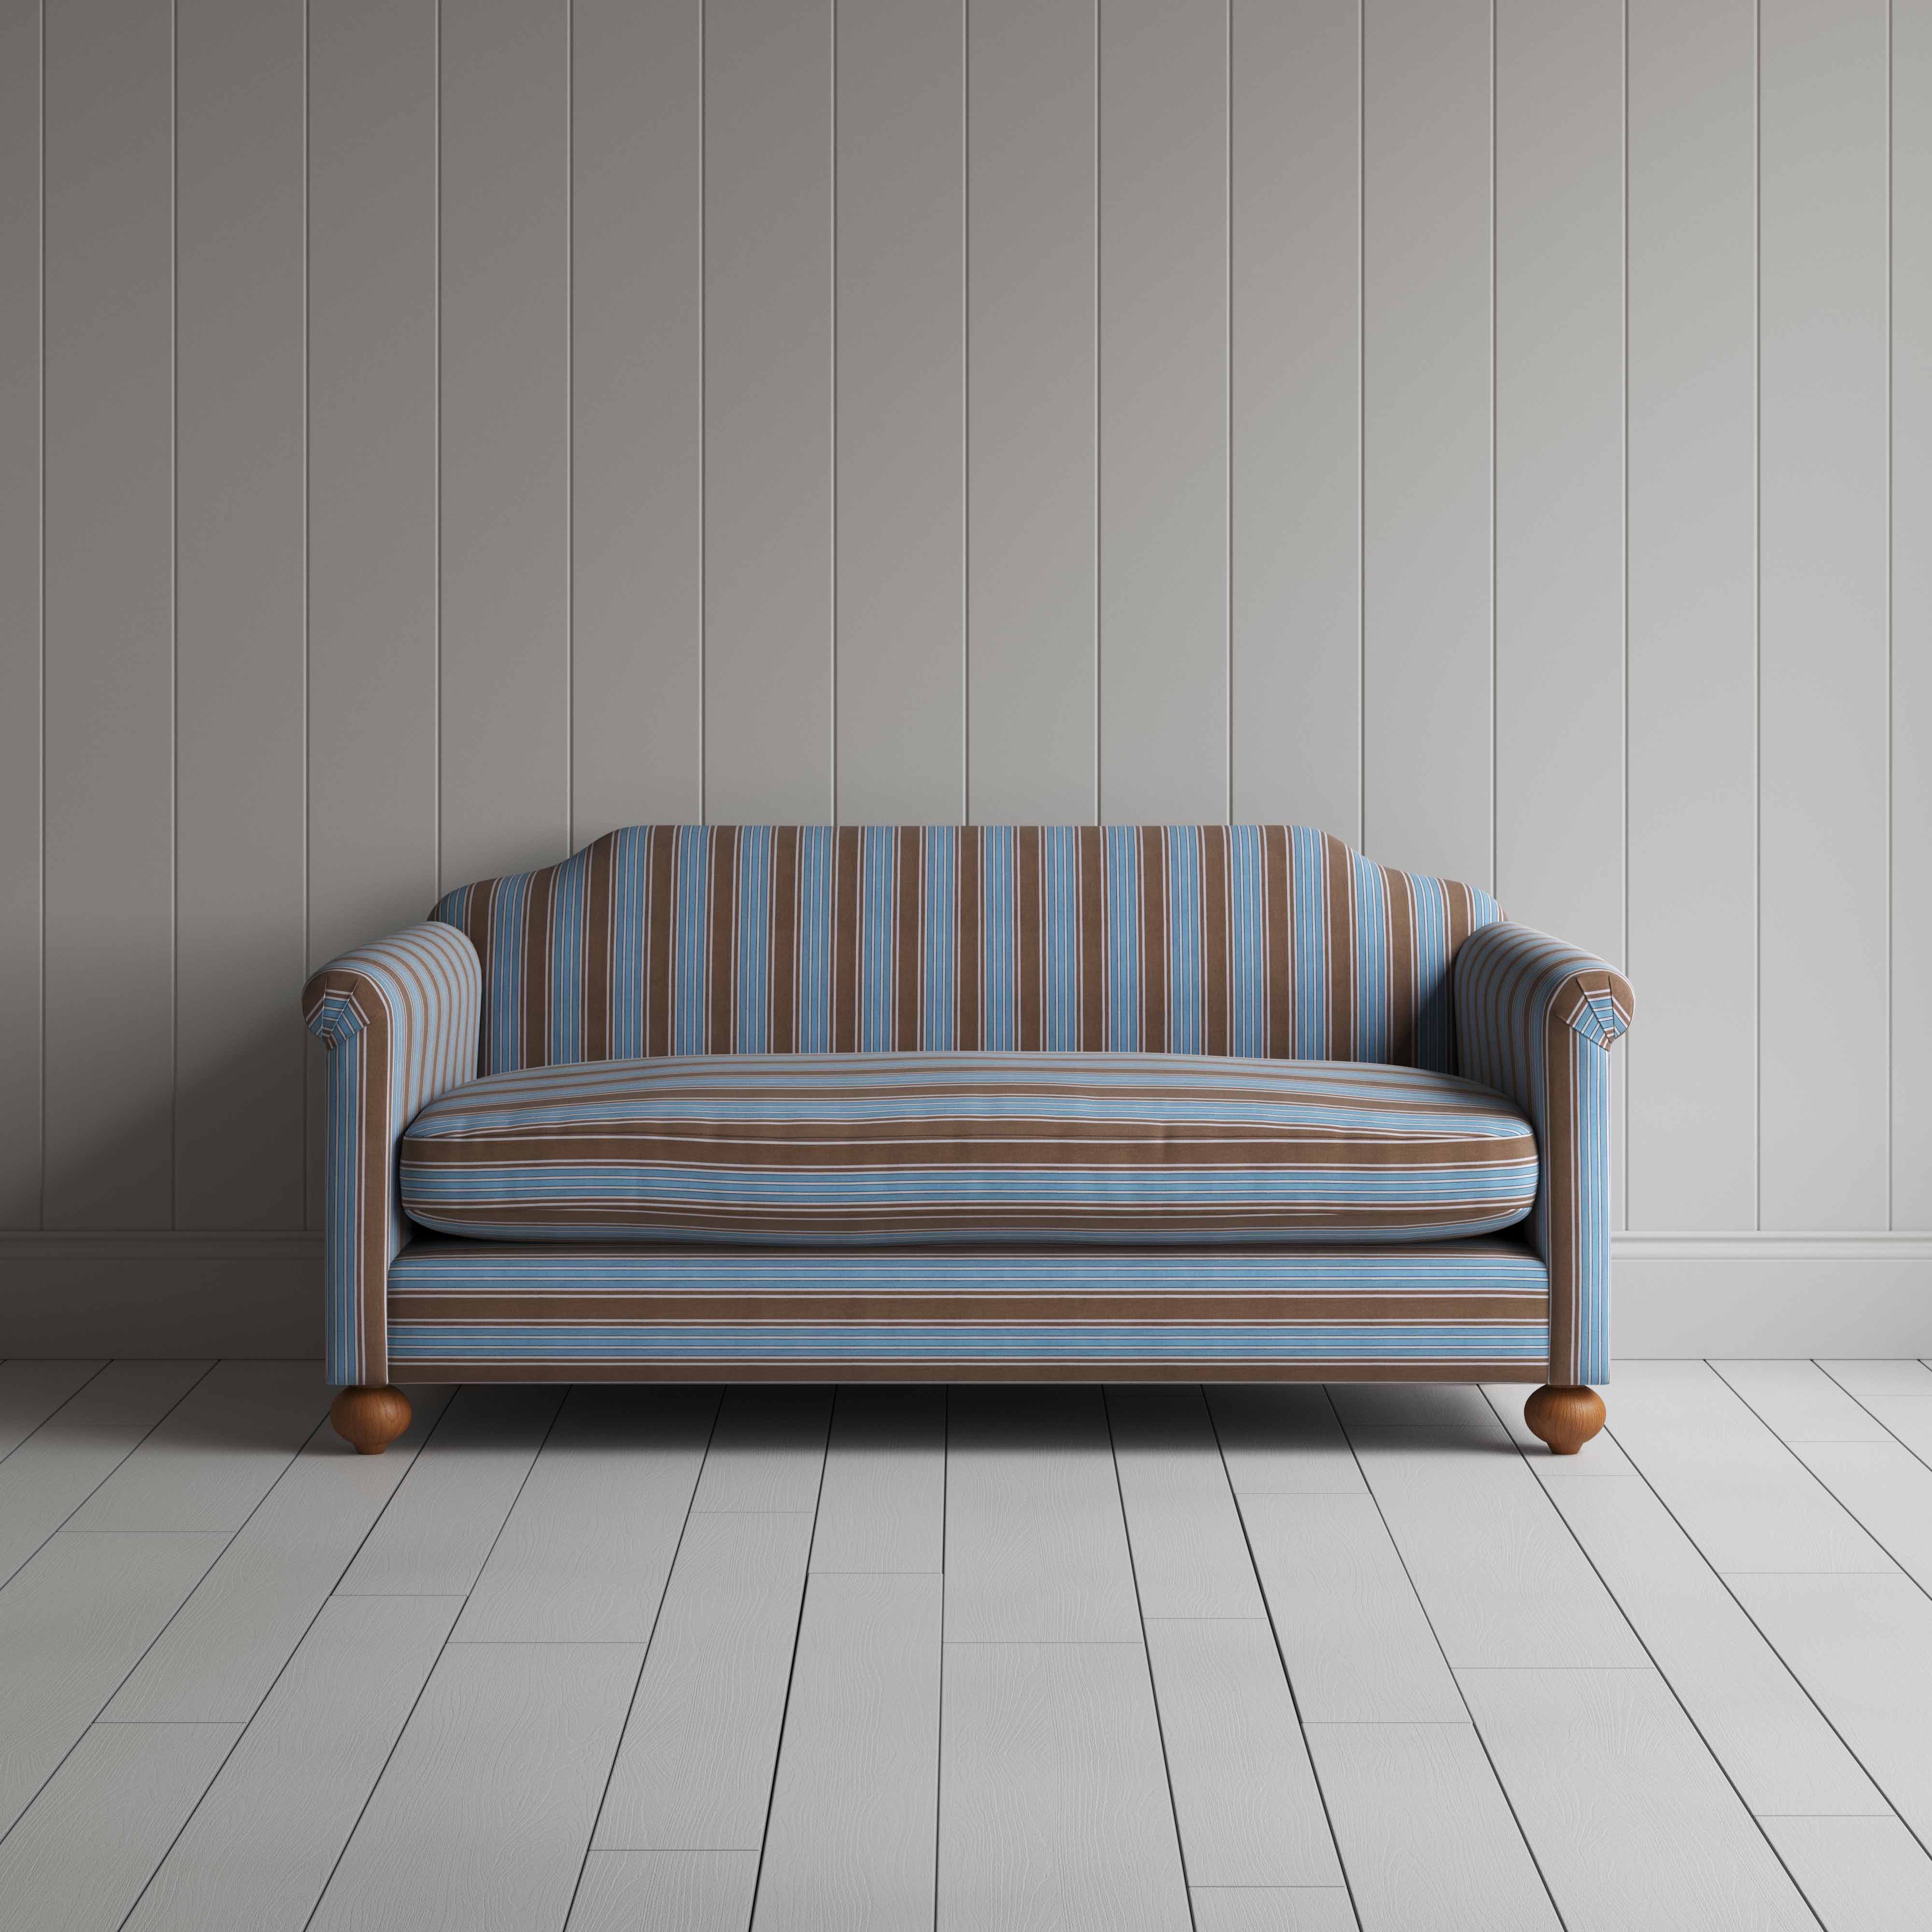  Dolittle 3 Seater Sofa in Regatta Cotton, Blue 